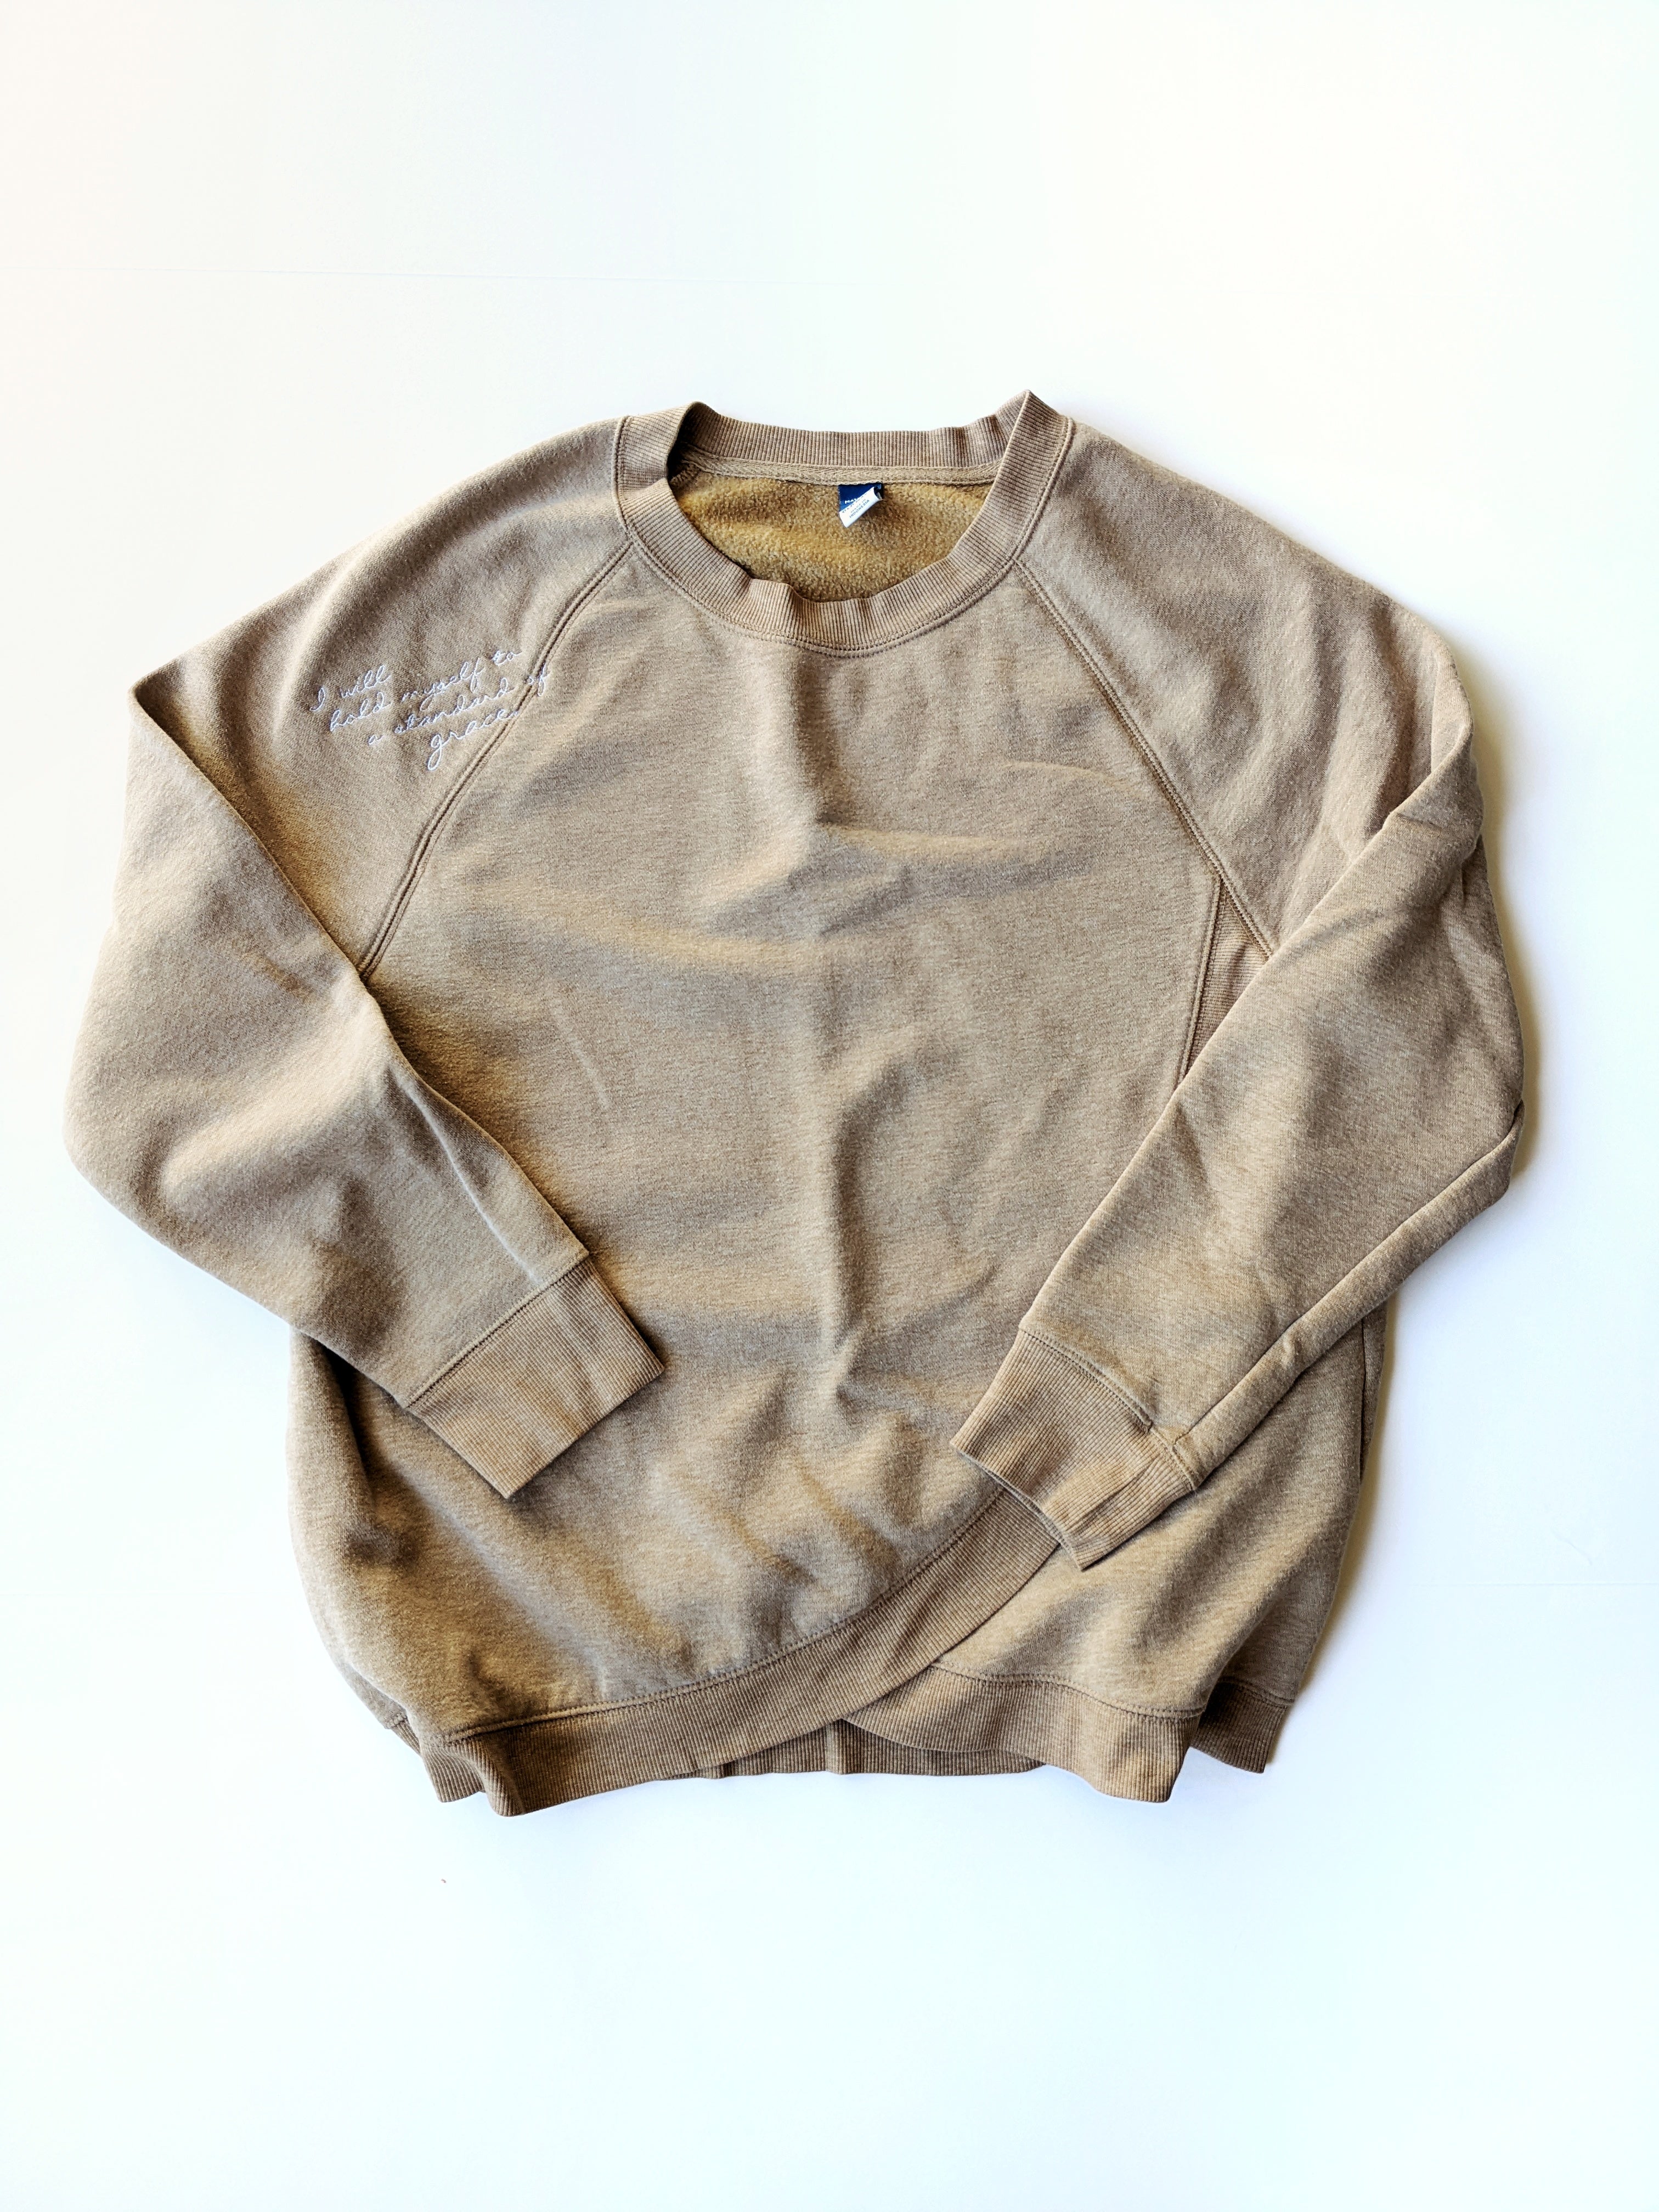 *UPCYCLED* embroidered sweatshirt- Size Medium